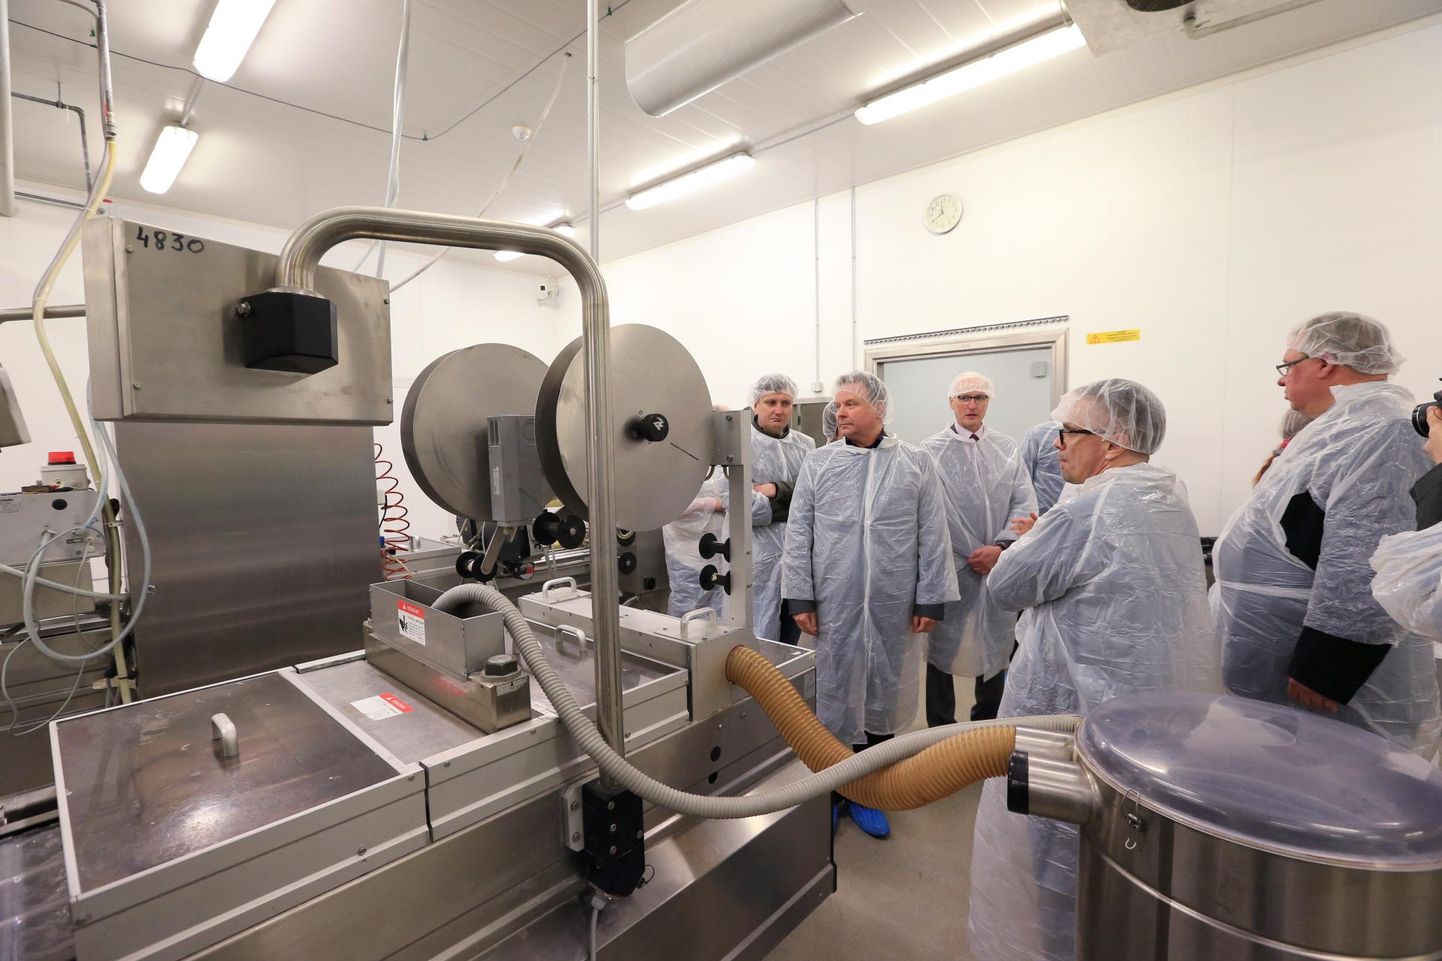 Ühistu Eesti Lihatööstus Vastse-Kuuste tehase avamine 2017. aasta aprillis.